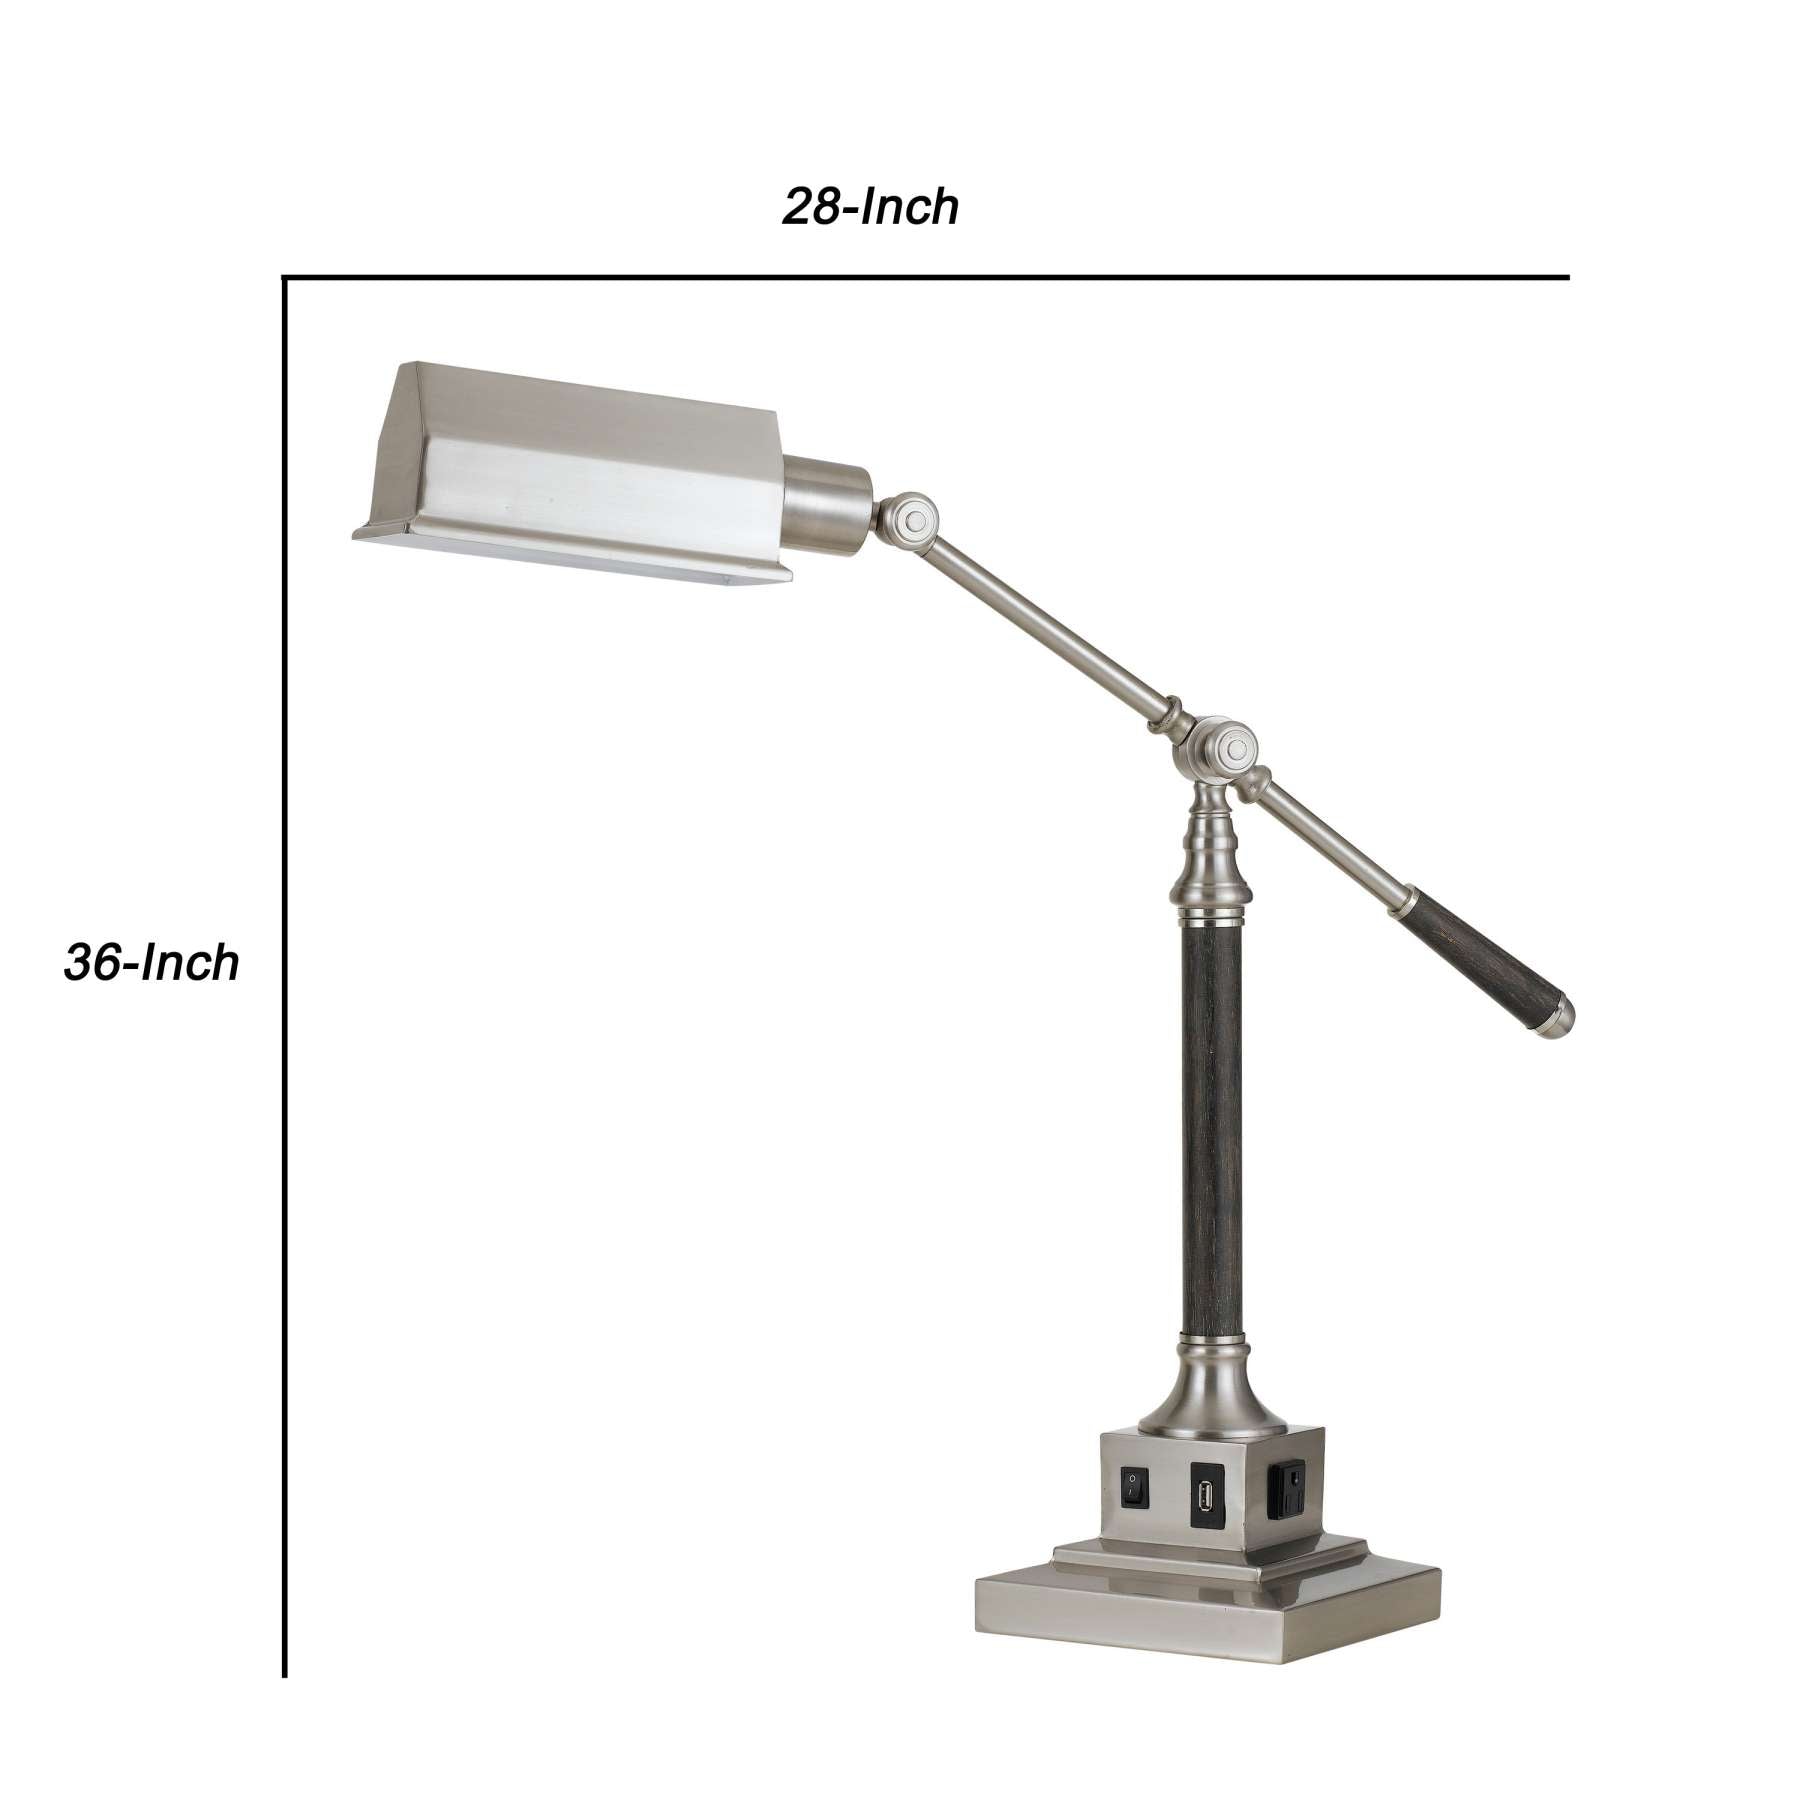 60 Watt Metal Desk Lamp With Adjustable Arm And Head, Silver By Benzara